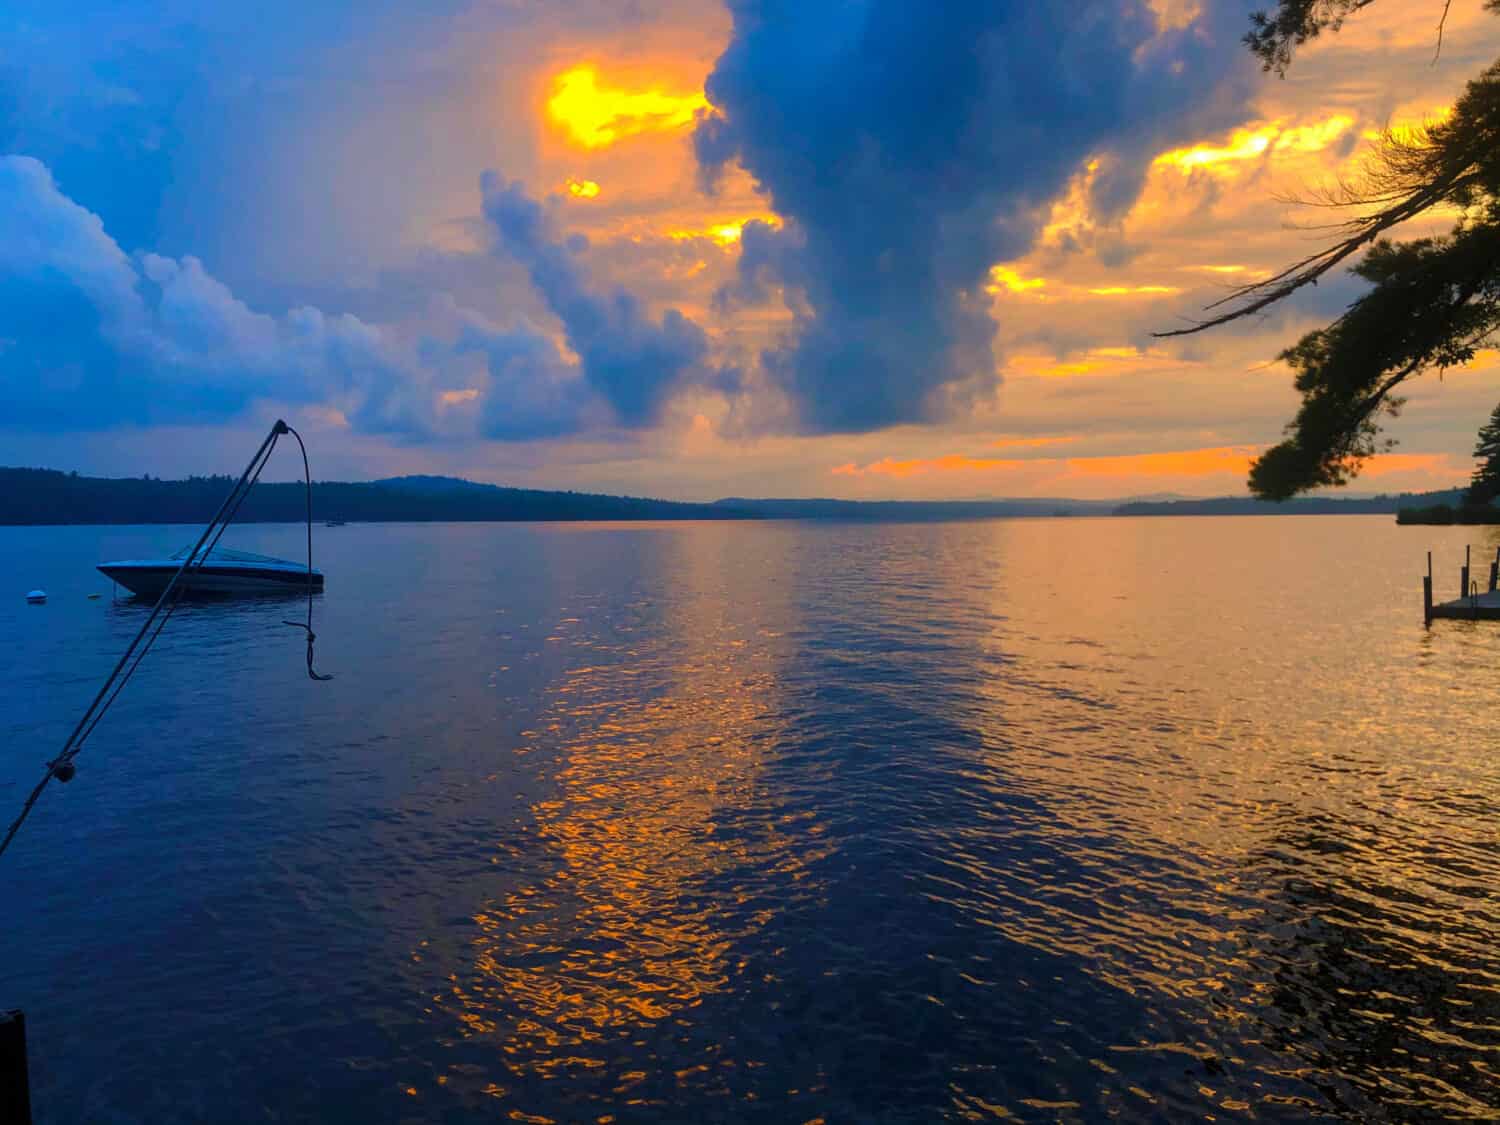 Sunset on Long Lake, Maine